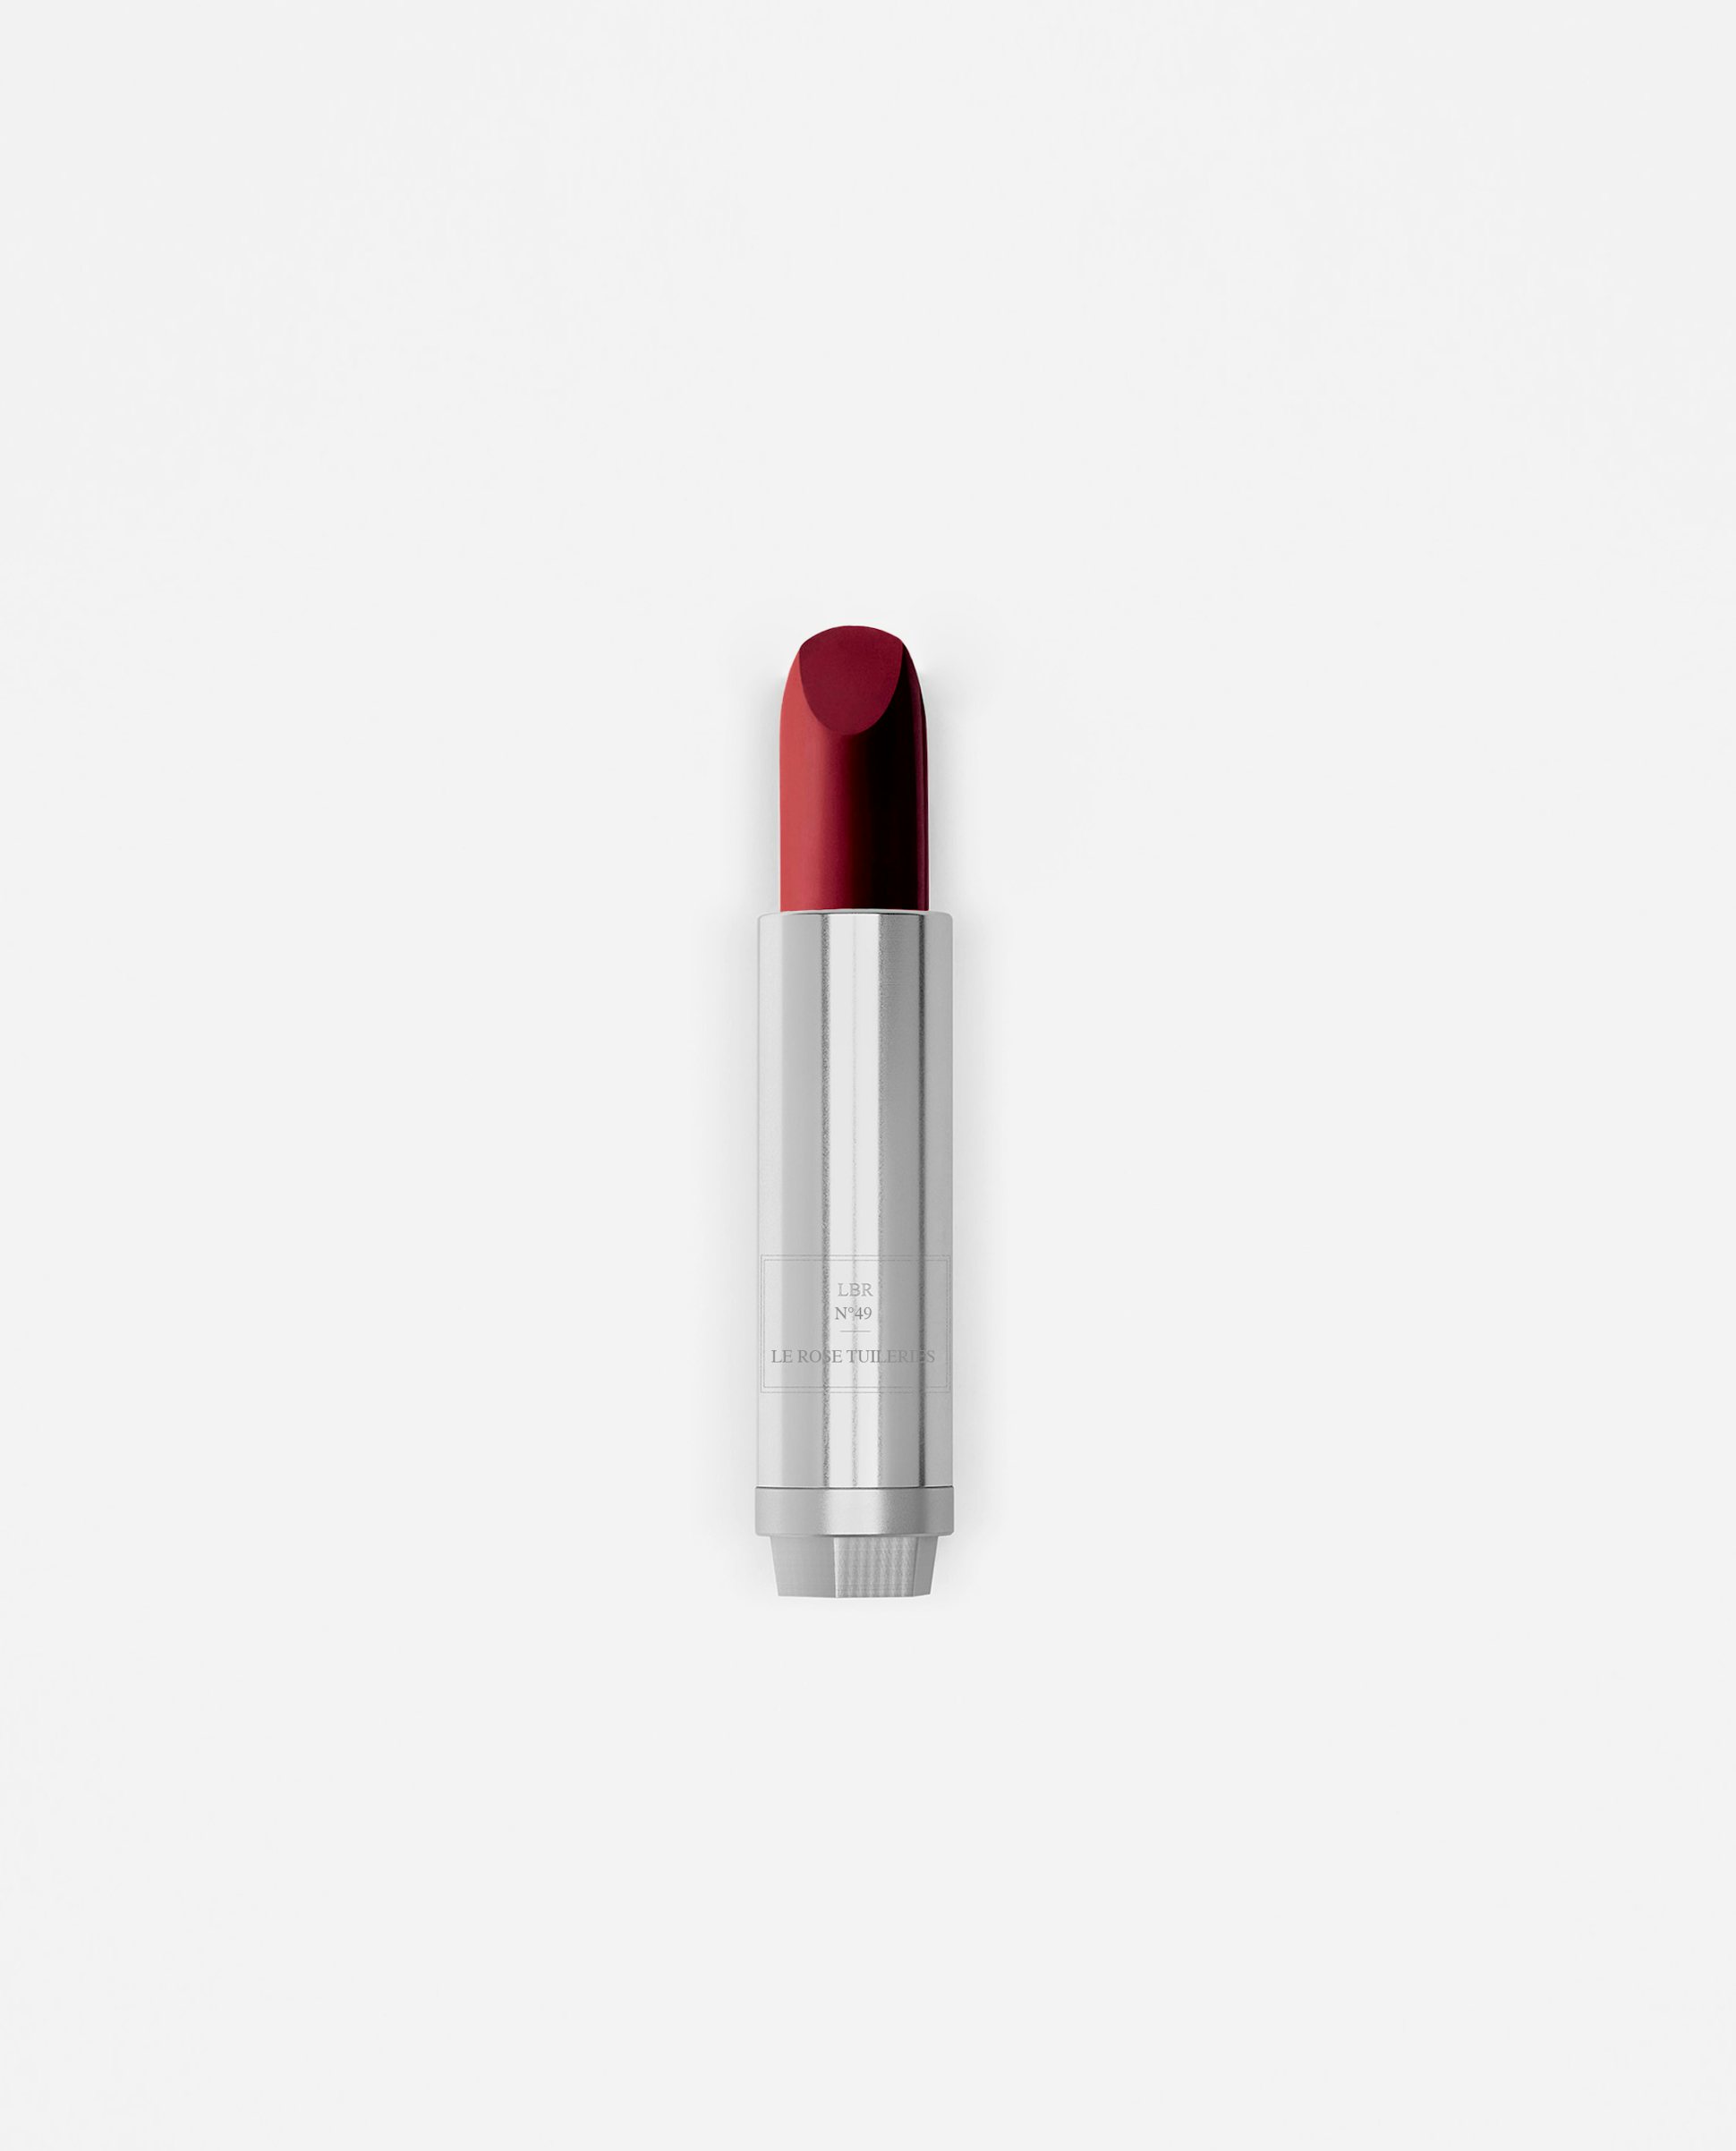 La bouche rouge nuance du rouge à lèvres Le Rose Tuileries dans sa recharge en metal